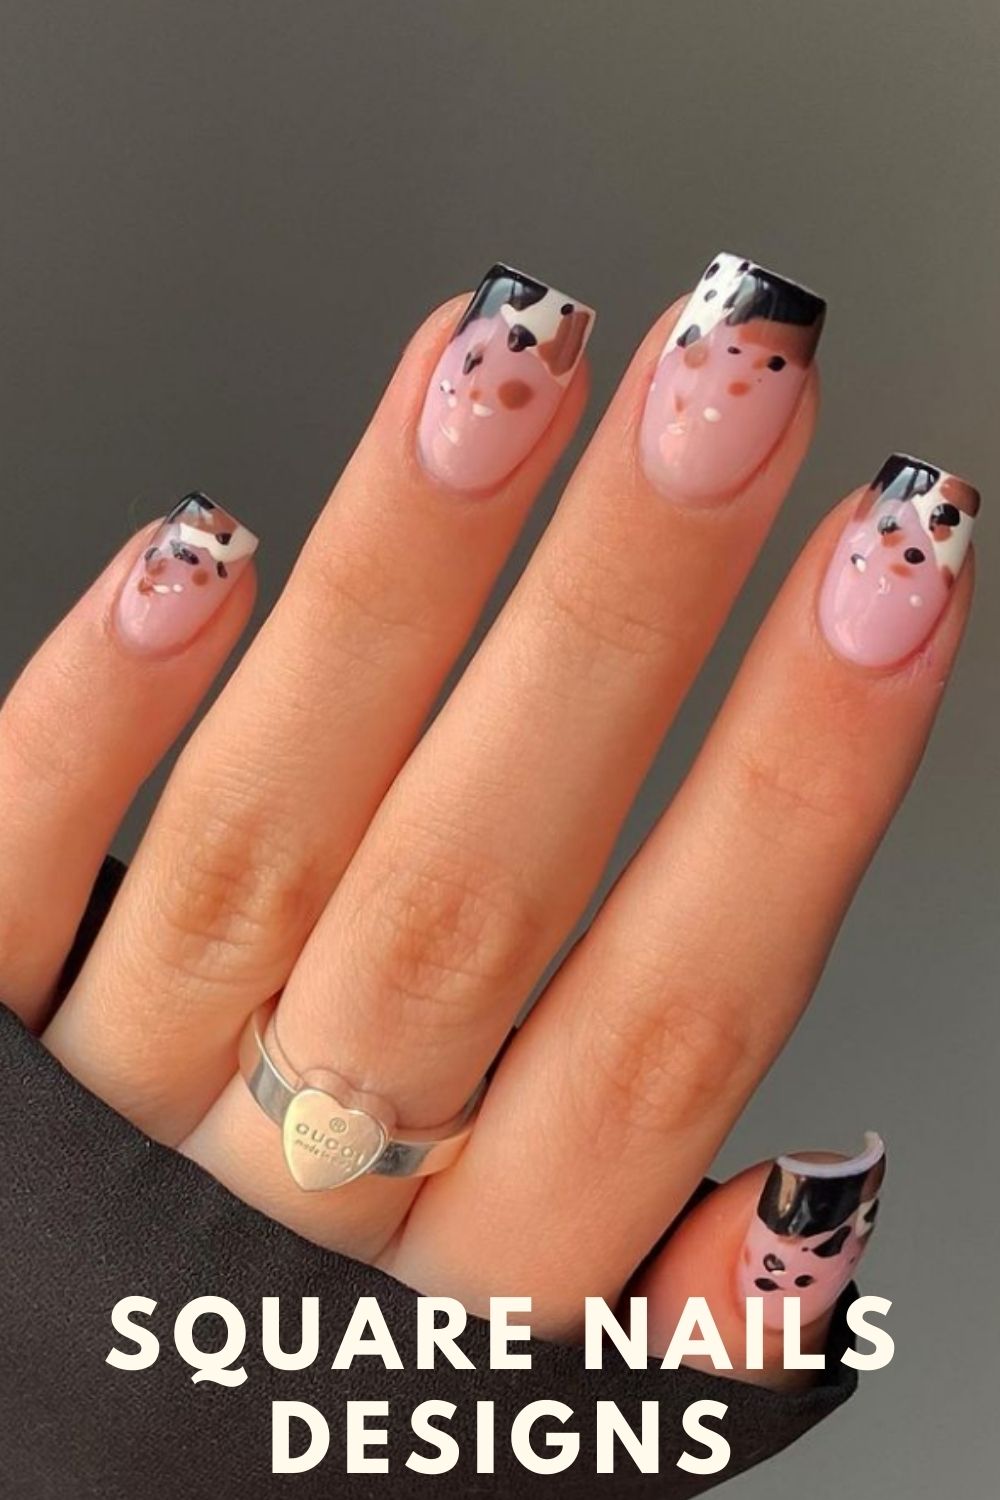 Cool nail designs